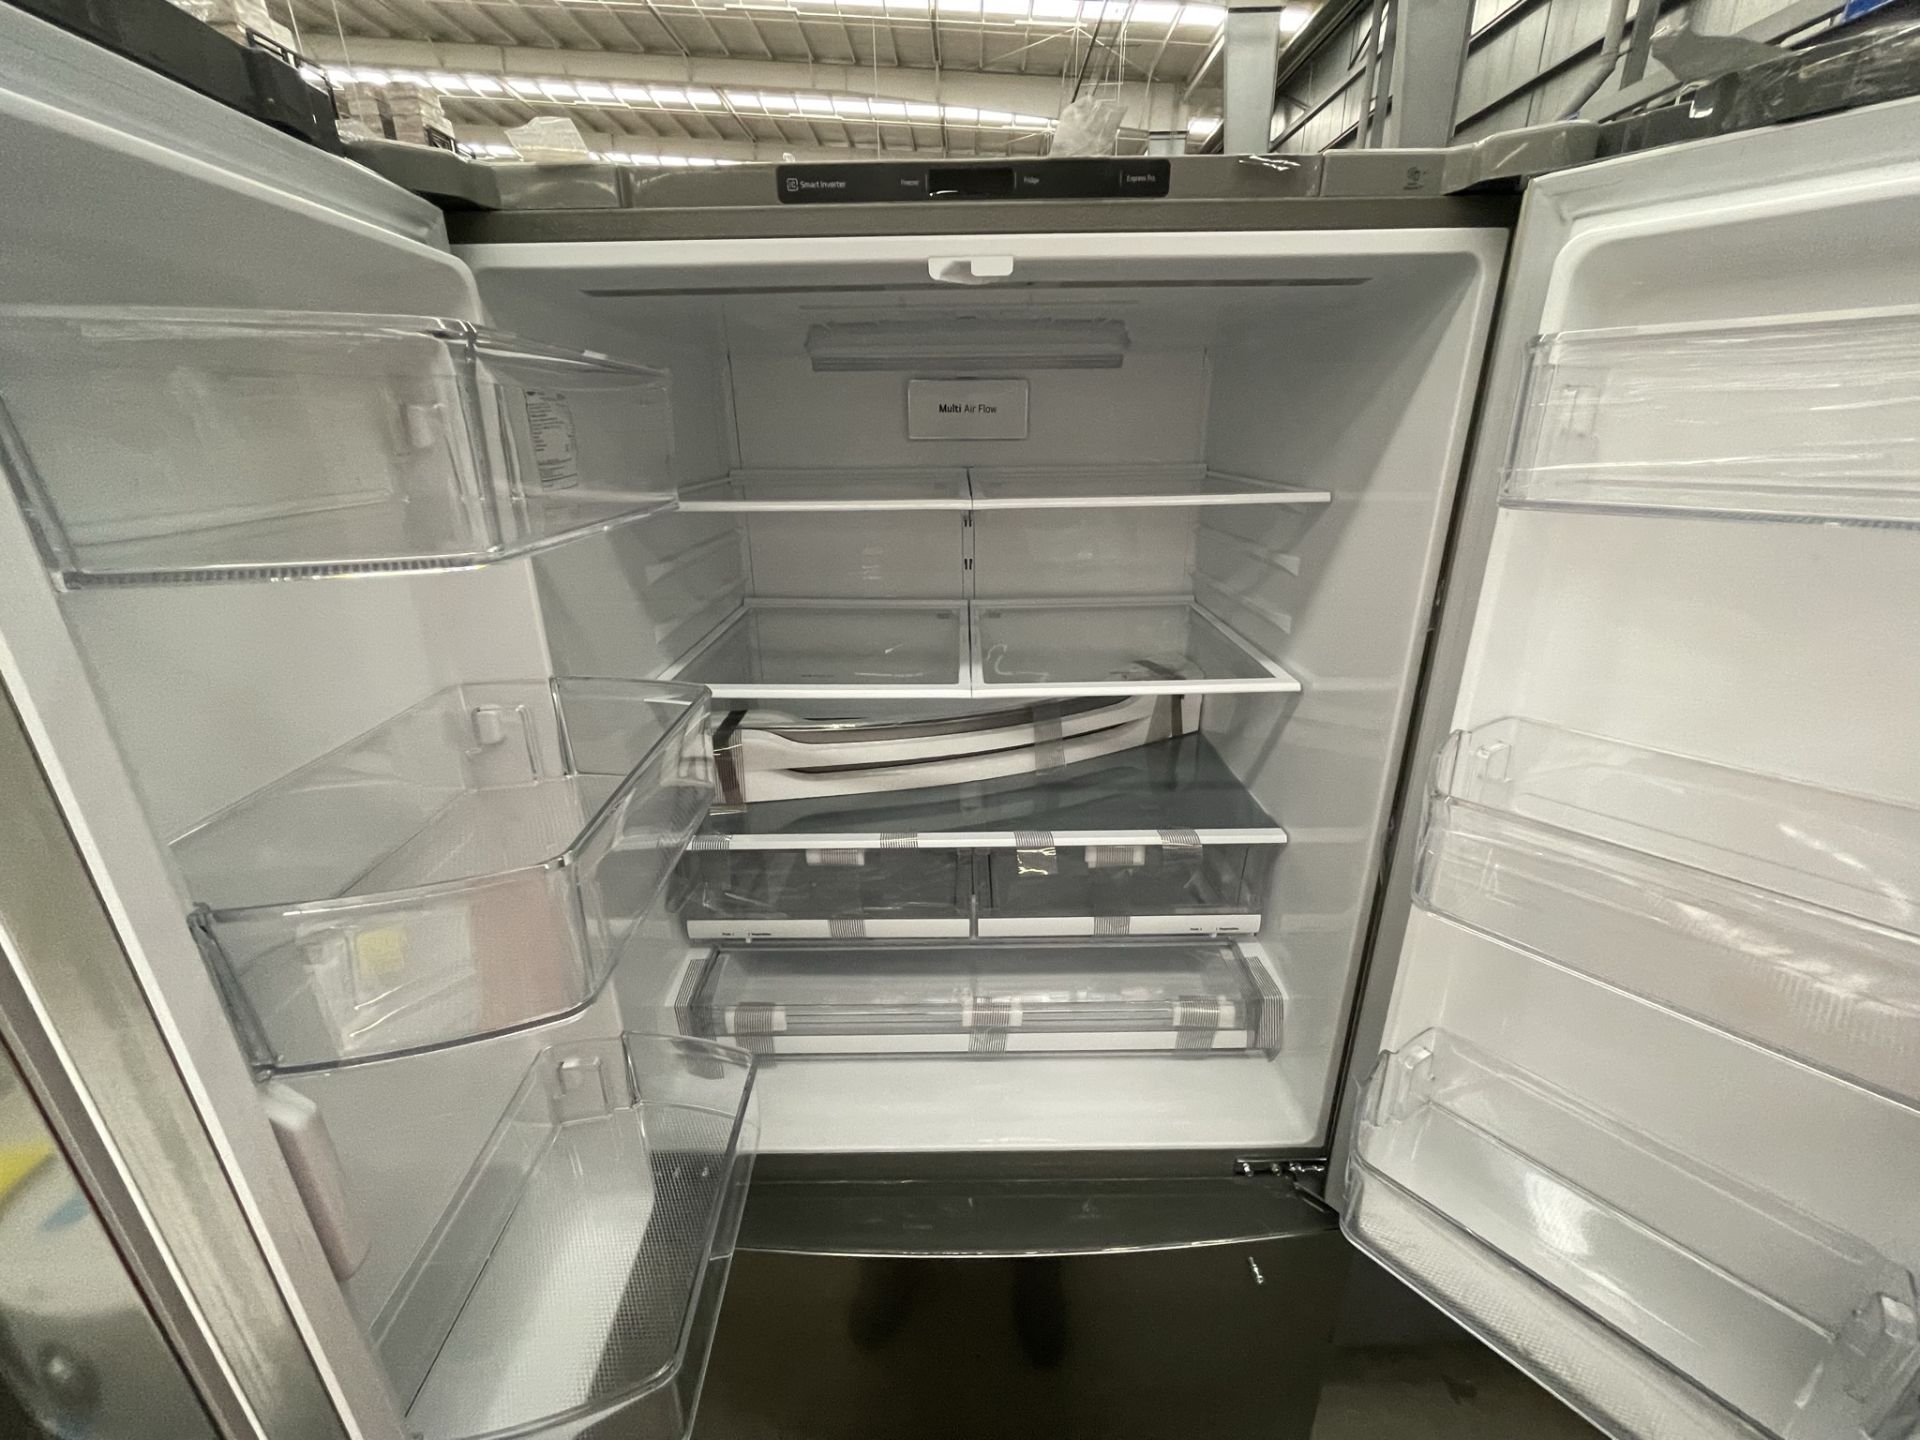 (EQUIPO NUEVO) Lote De 2 Refrigeradores Contiene: 1 Refrigerador Marca LG, Modelo GM29BP, Serie208M - Image 7 of 16